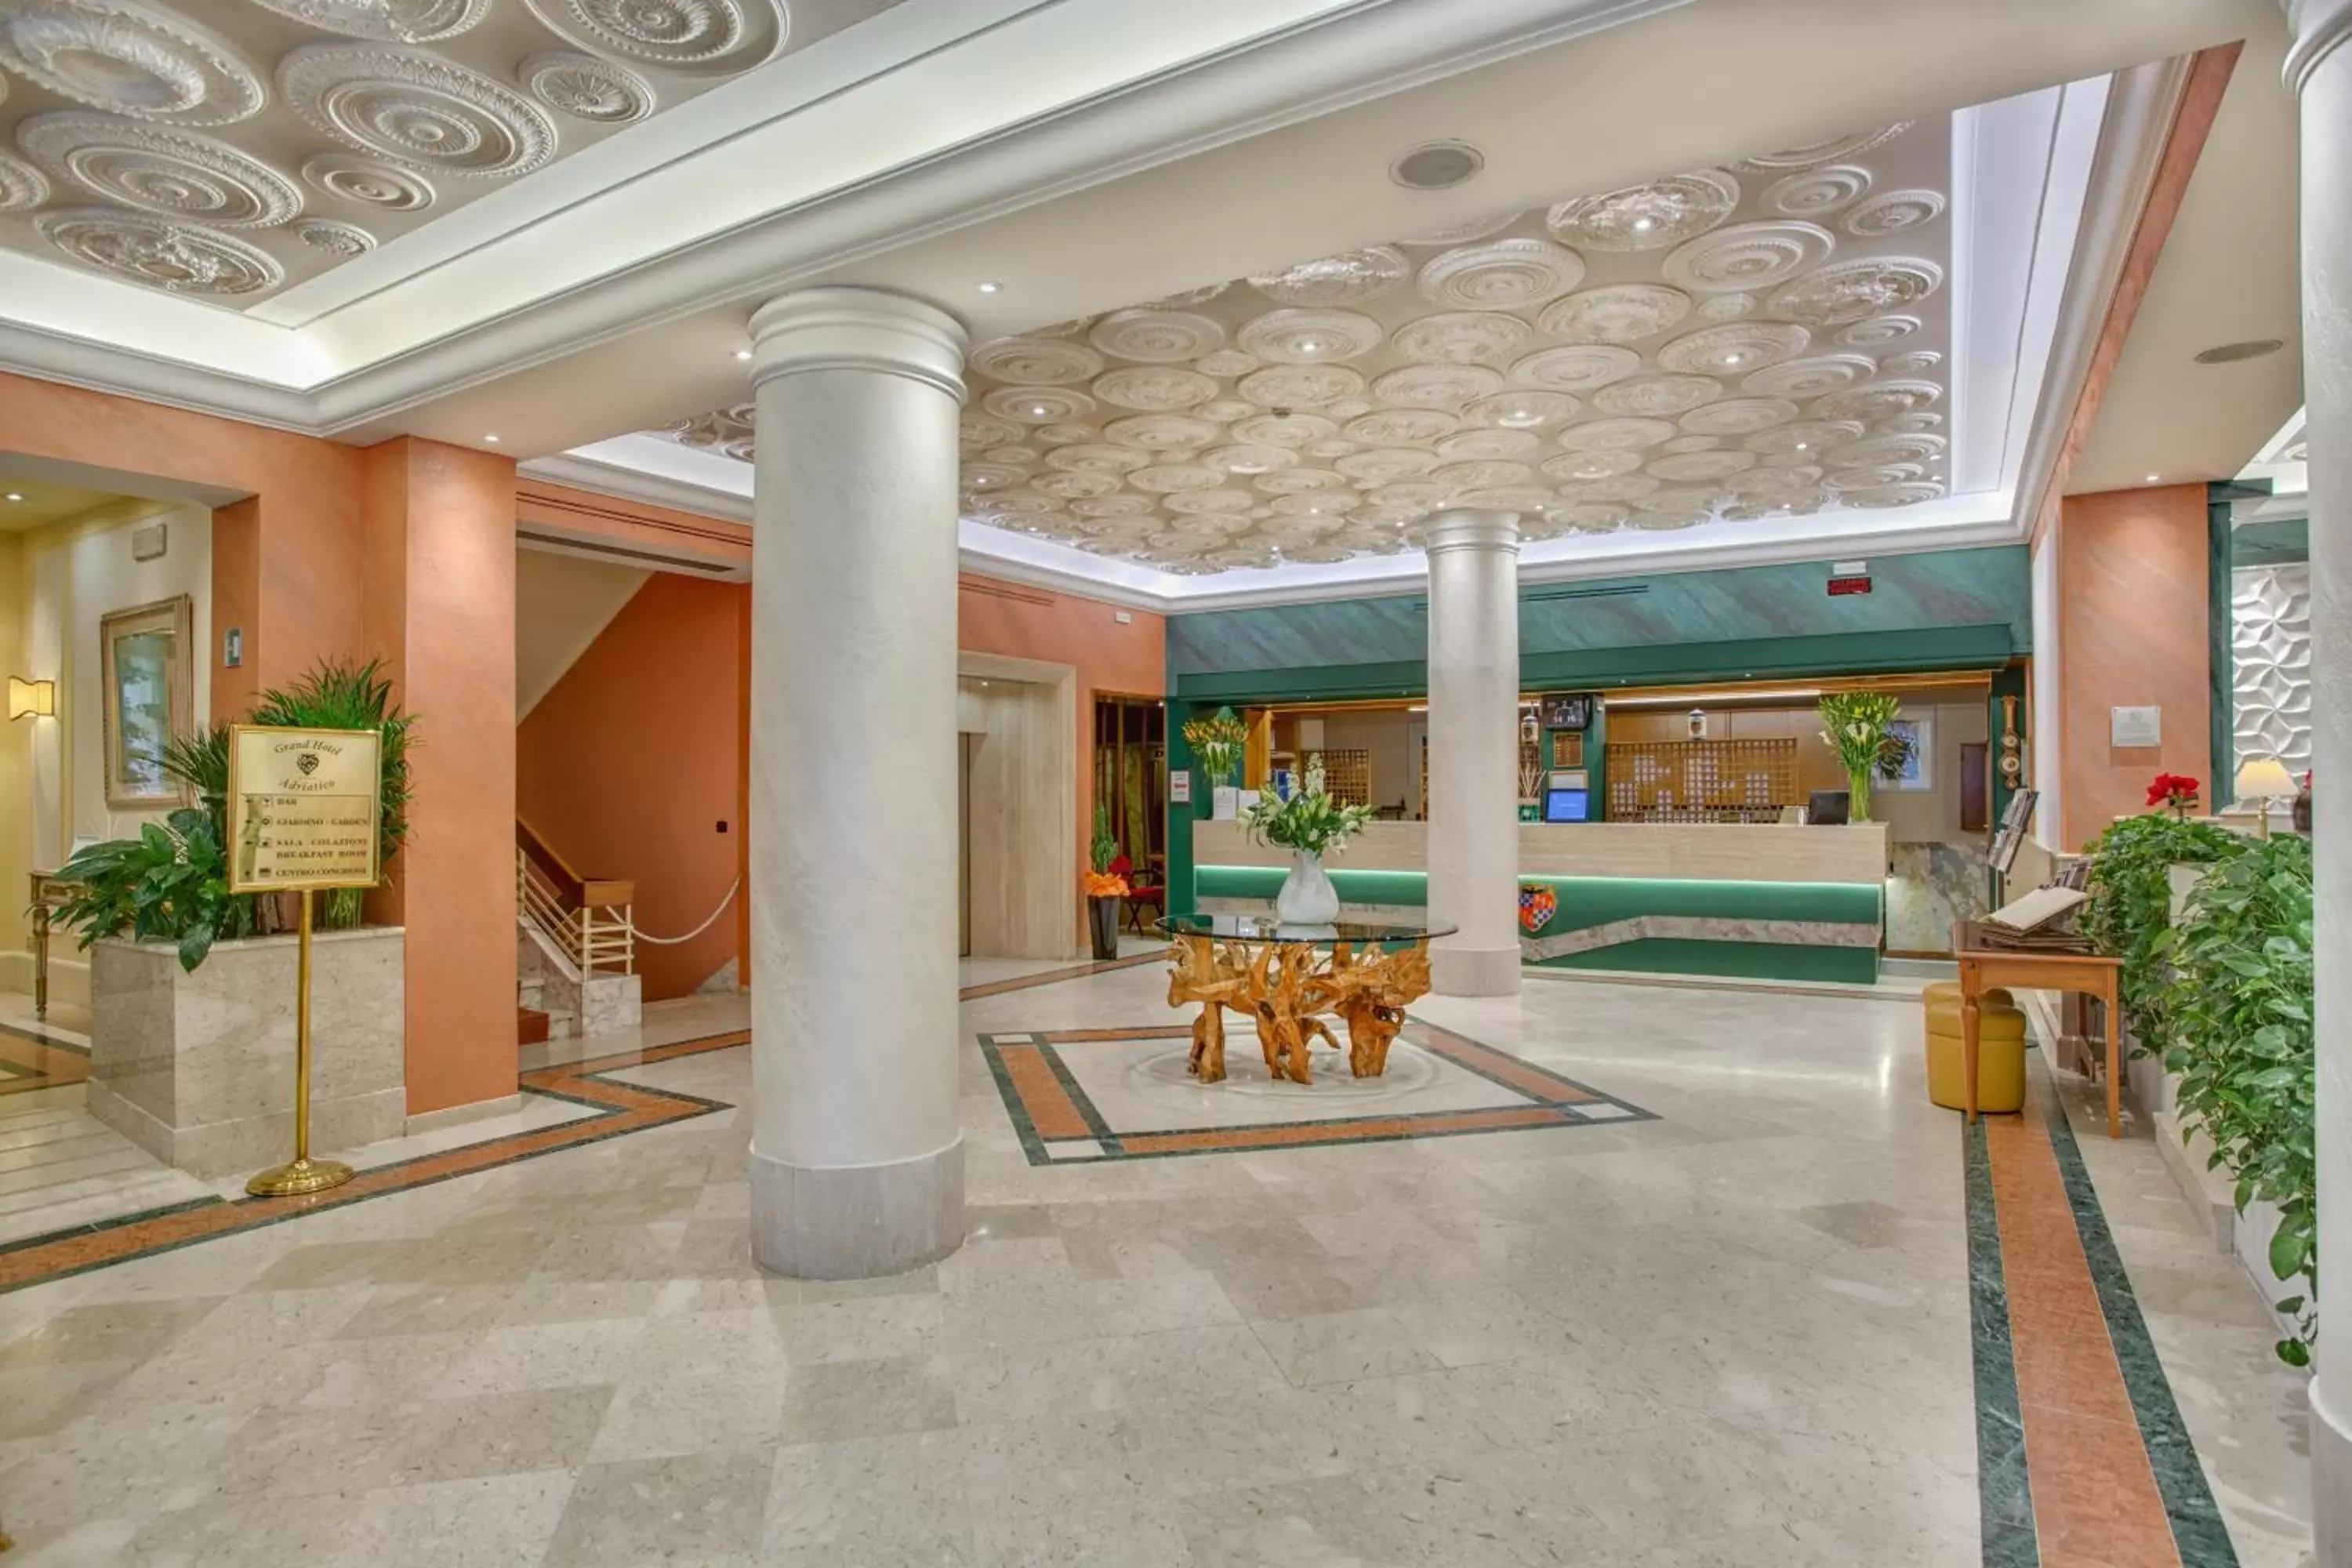 Lobby or reception, Lobby/Reception in Grand Hotel Adriatico